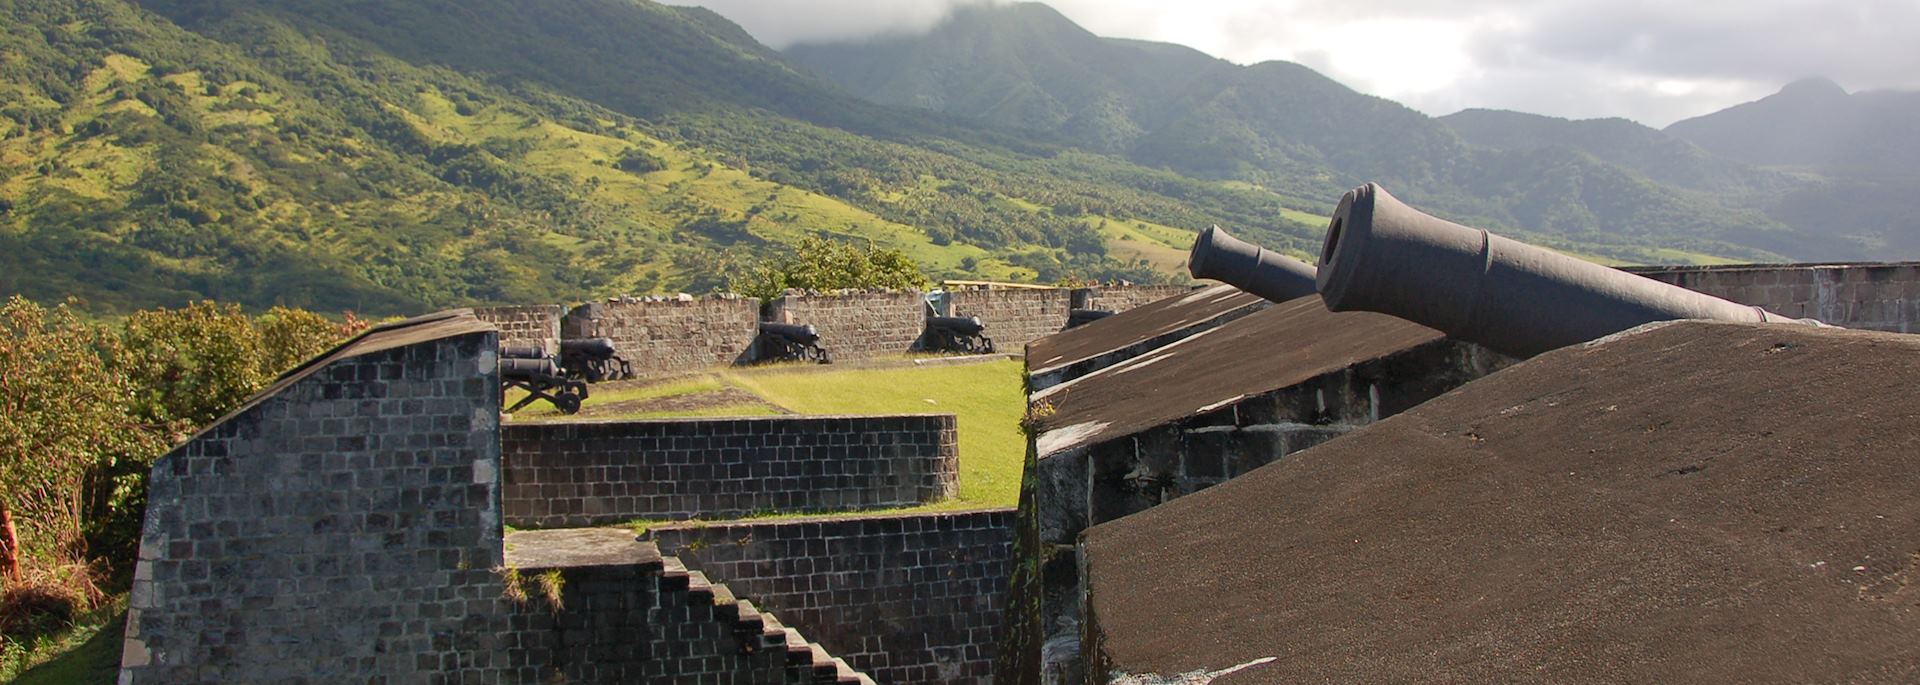 Brimstone Hill Fortress, Saint Kitts